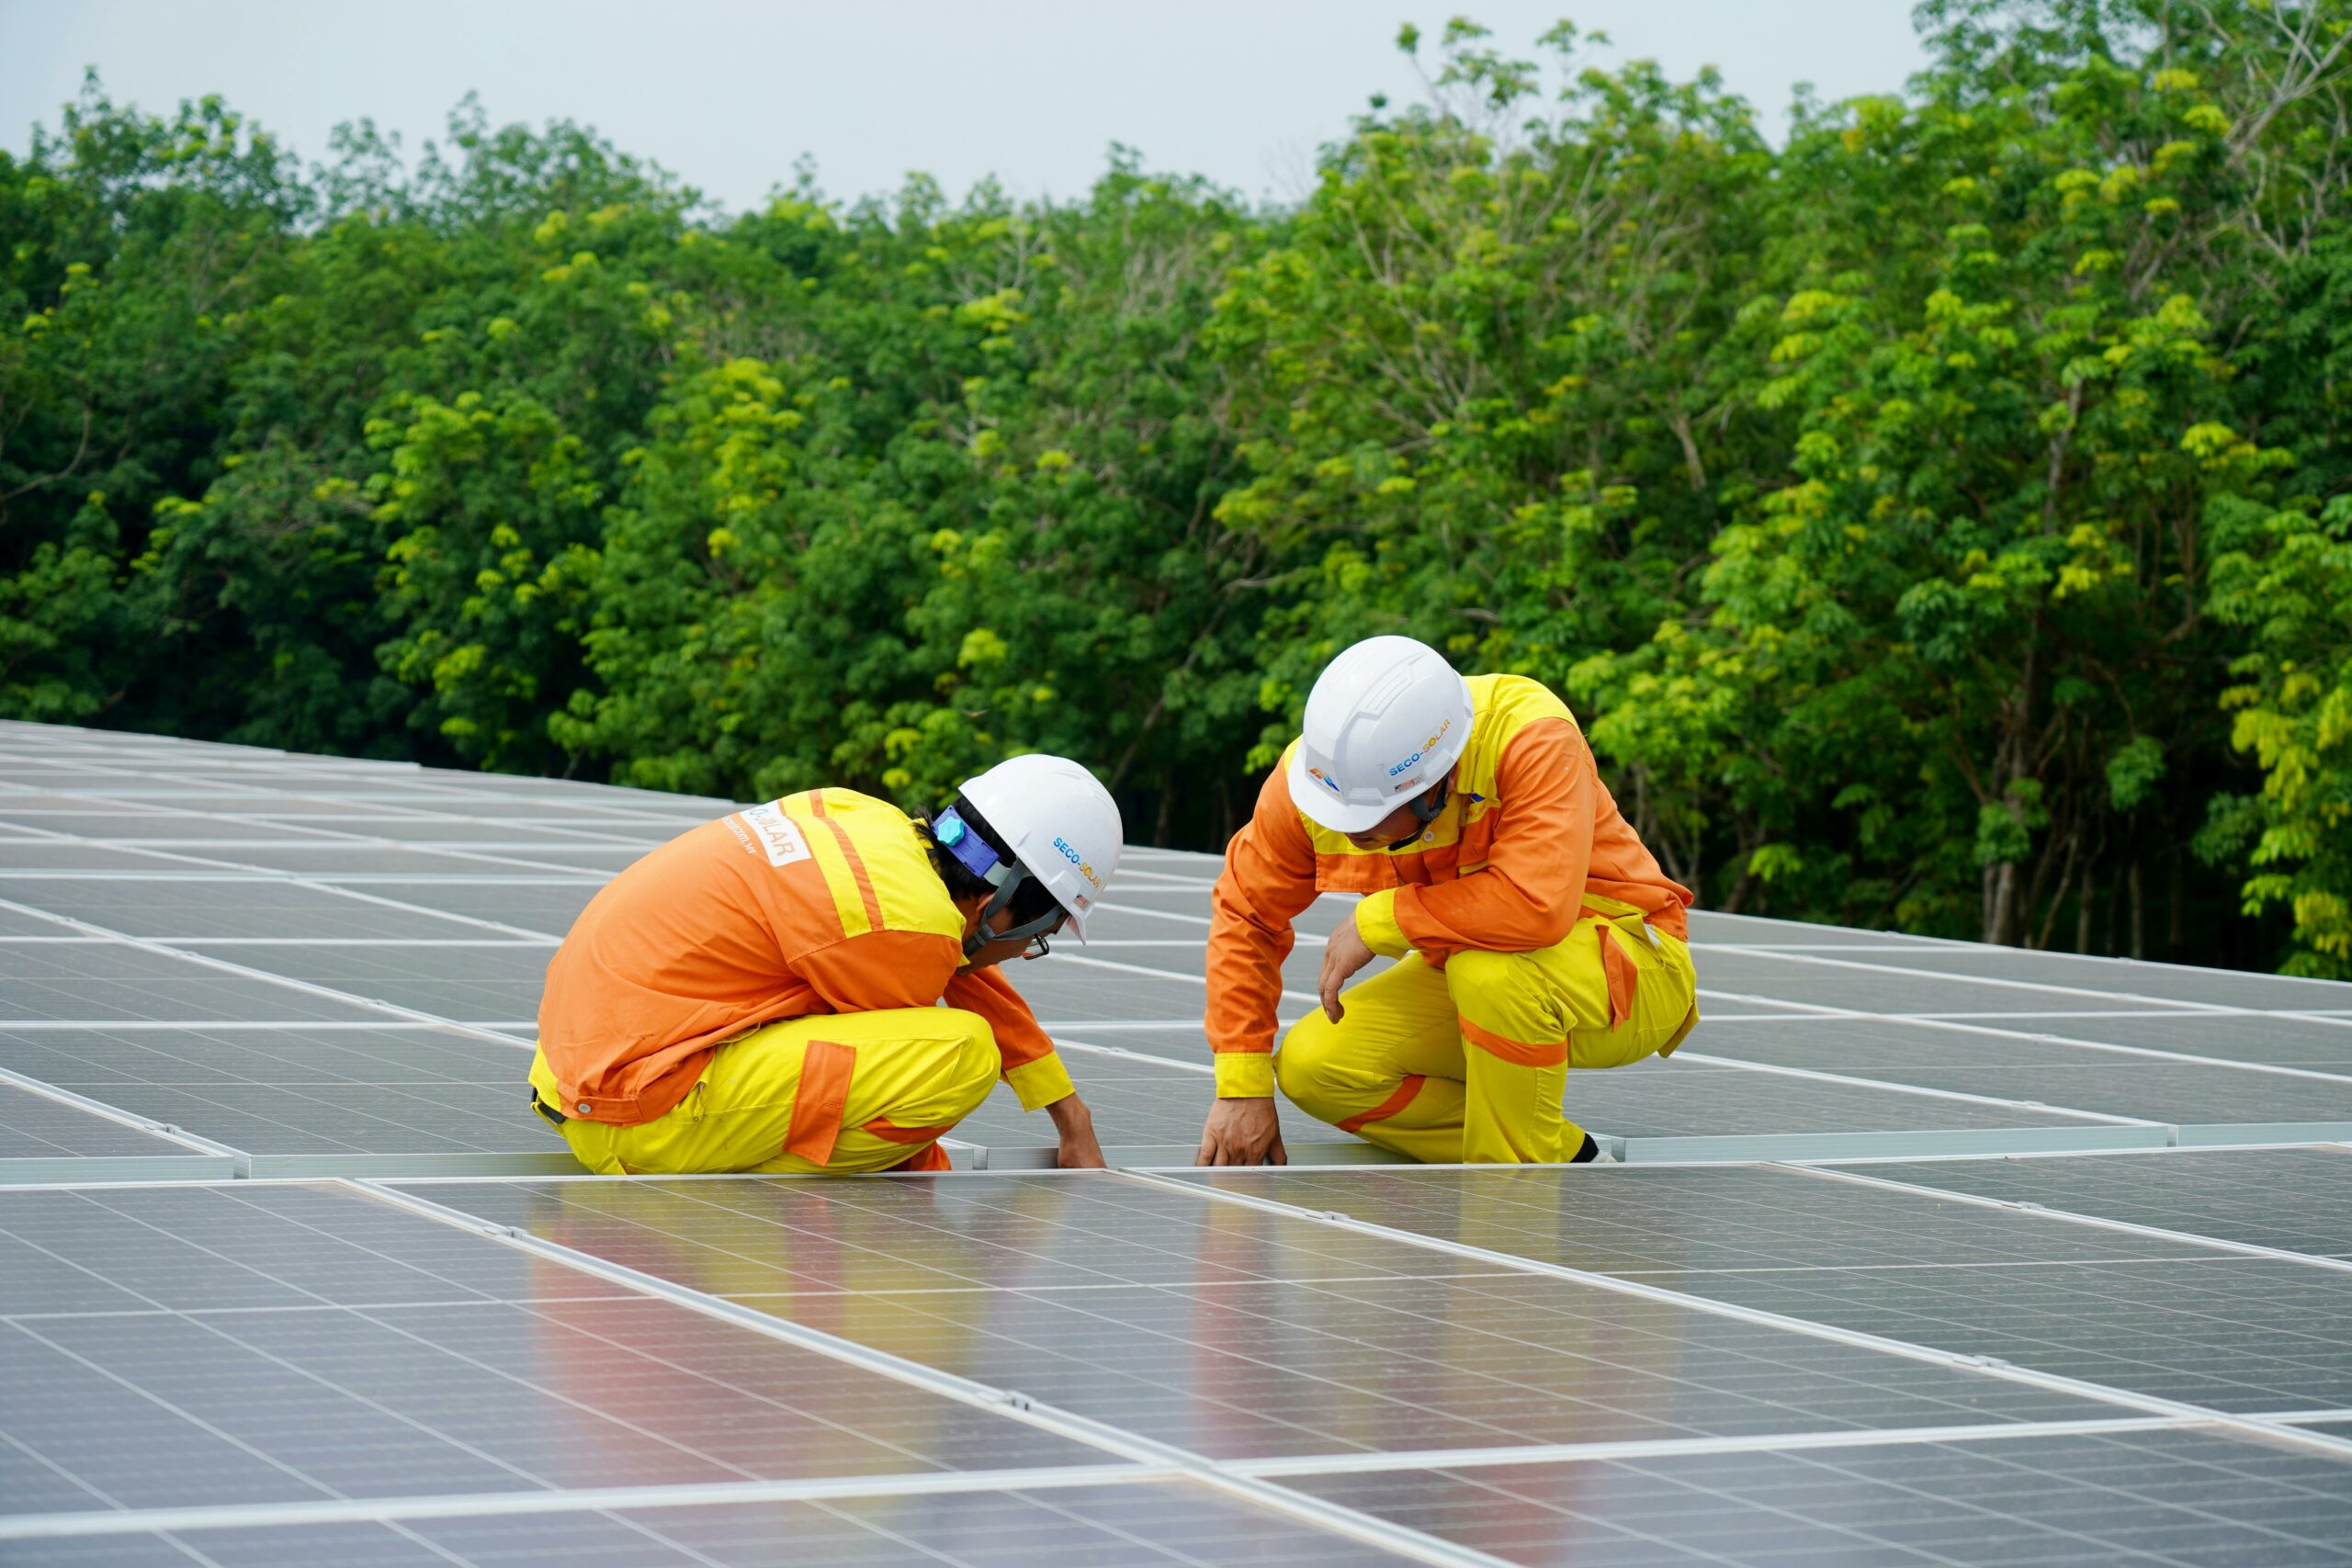 Deux travailleurs en vêtements de sécurité jaunes inspectent des panneaux solaires sur un large toit, illustrant le travail d'équipe dans le secteur de l'énergie renouvelable.